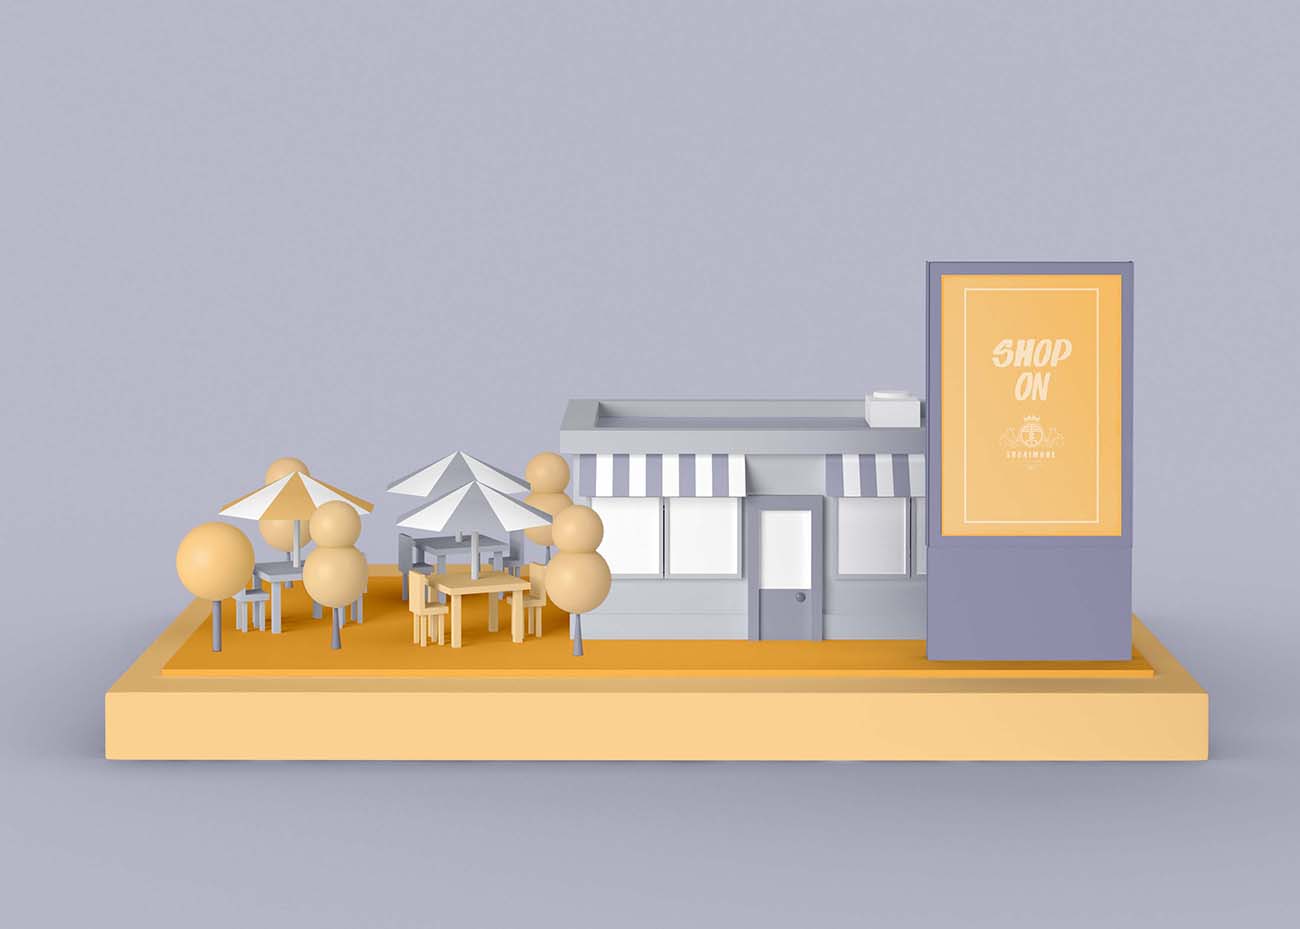 黄色3D立体商店建筑户外广告PSD源文件exterior-advert-shop-concept